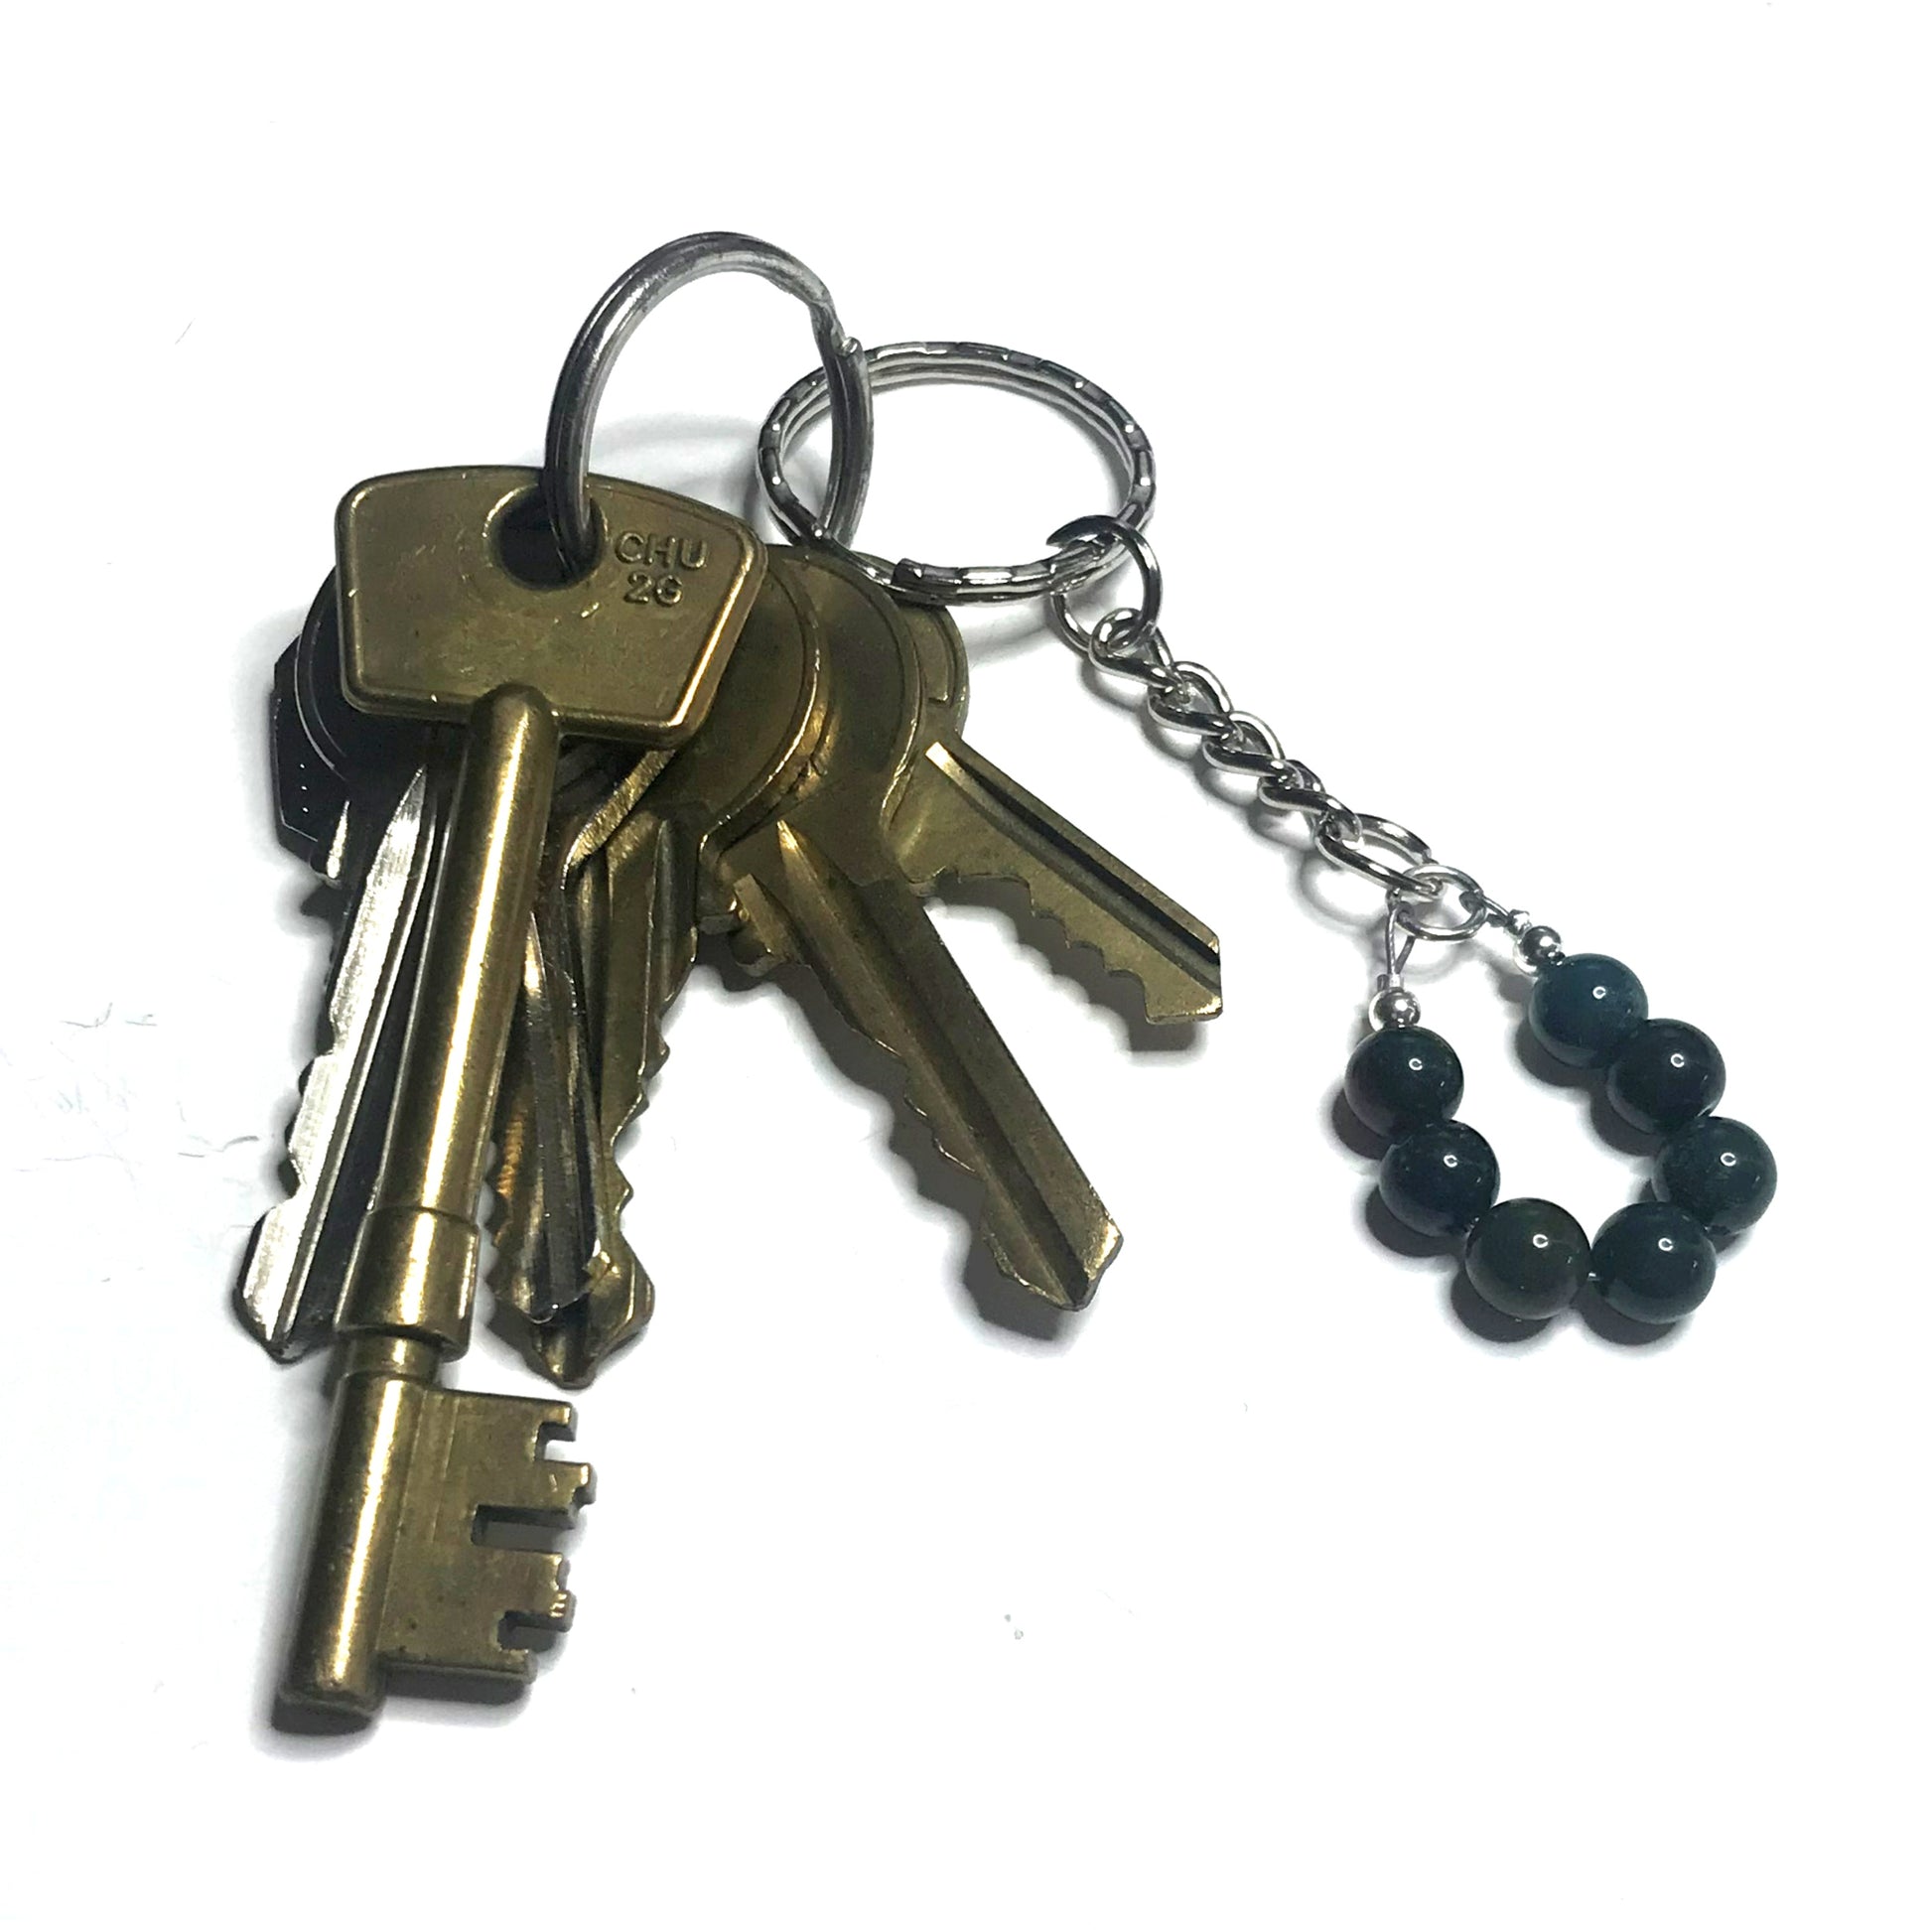 Bloodstone keychain with keys